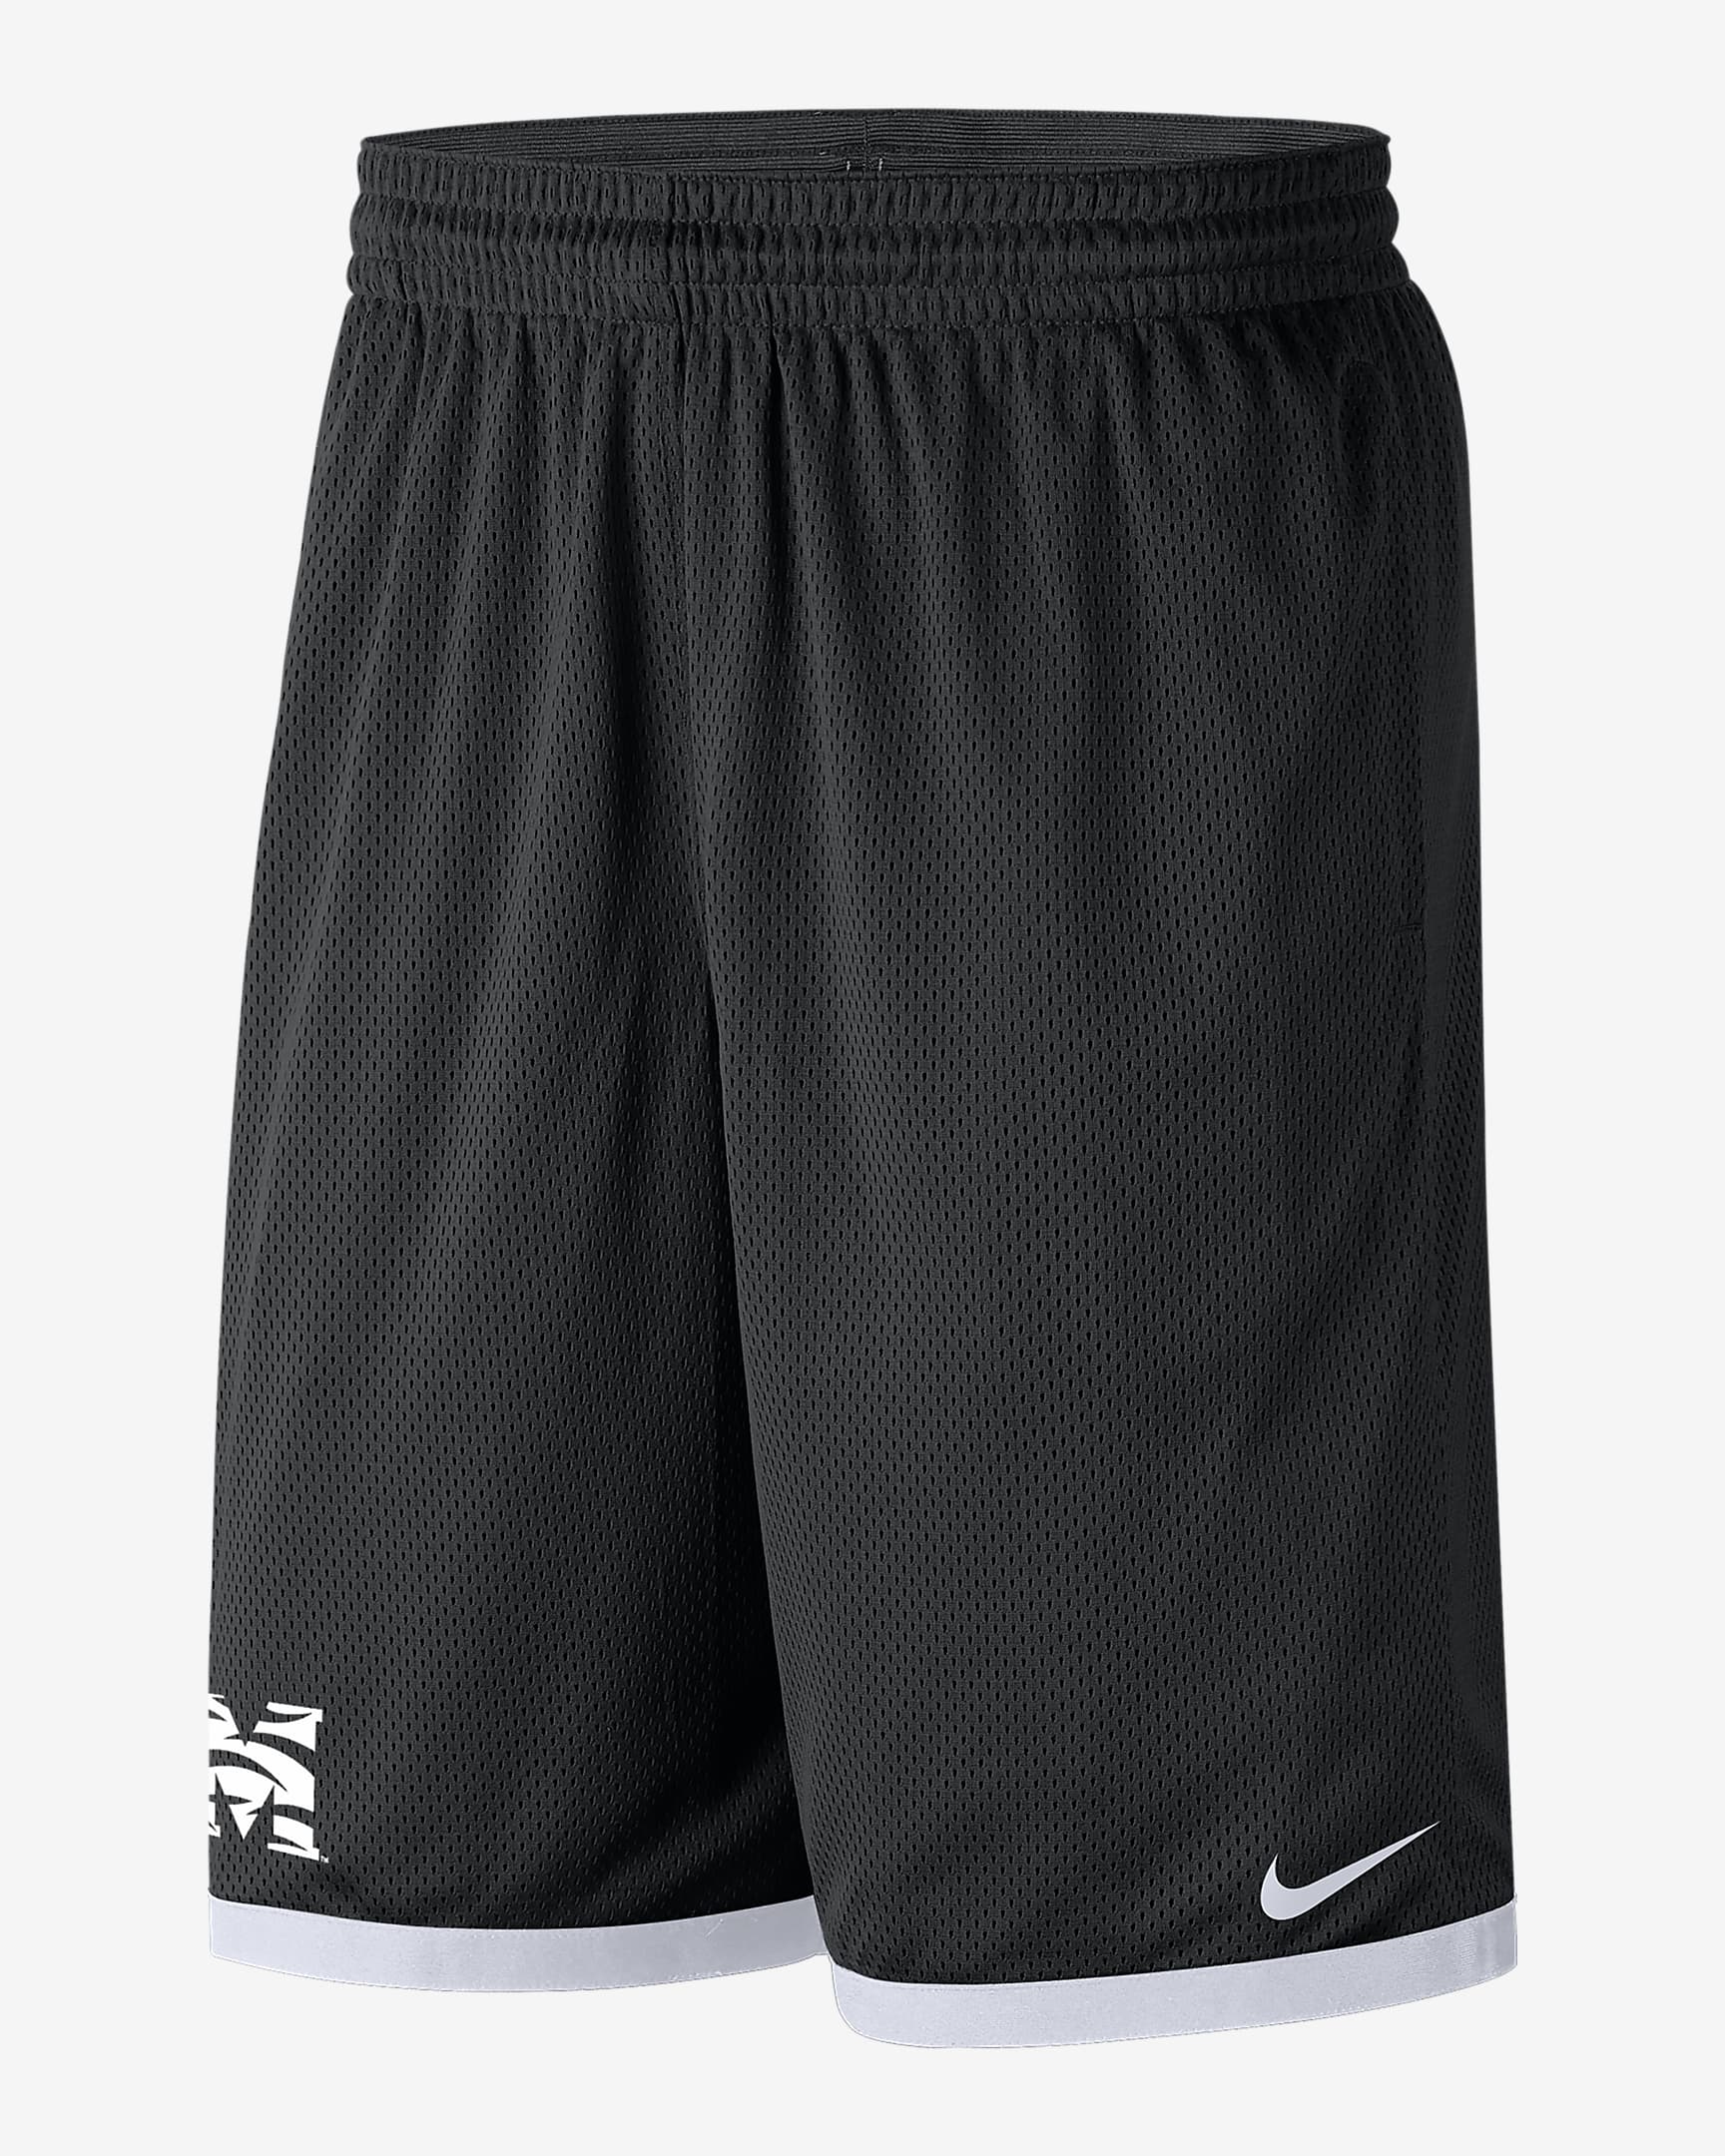 Morehouse Men's Nike College Mesh Shorts. Nike.com